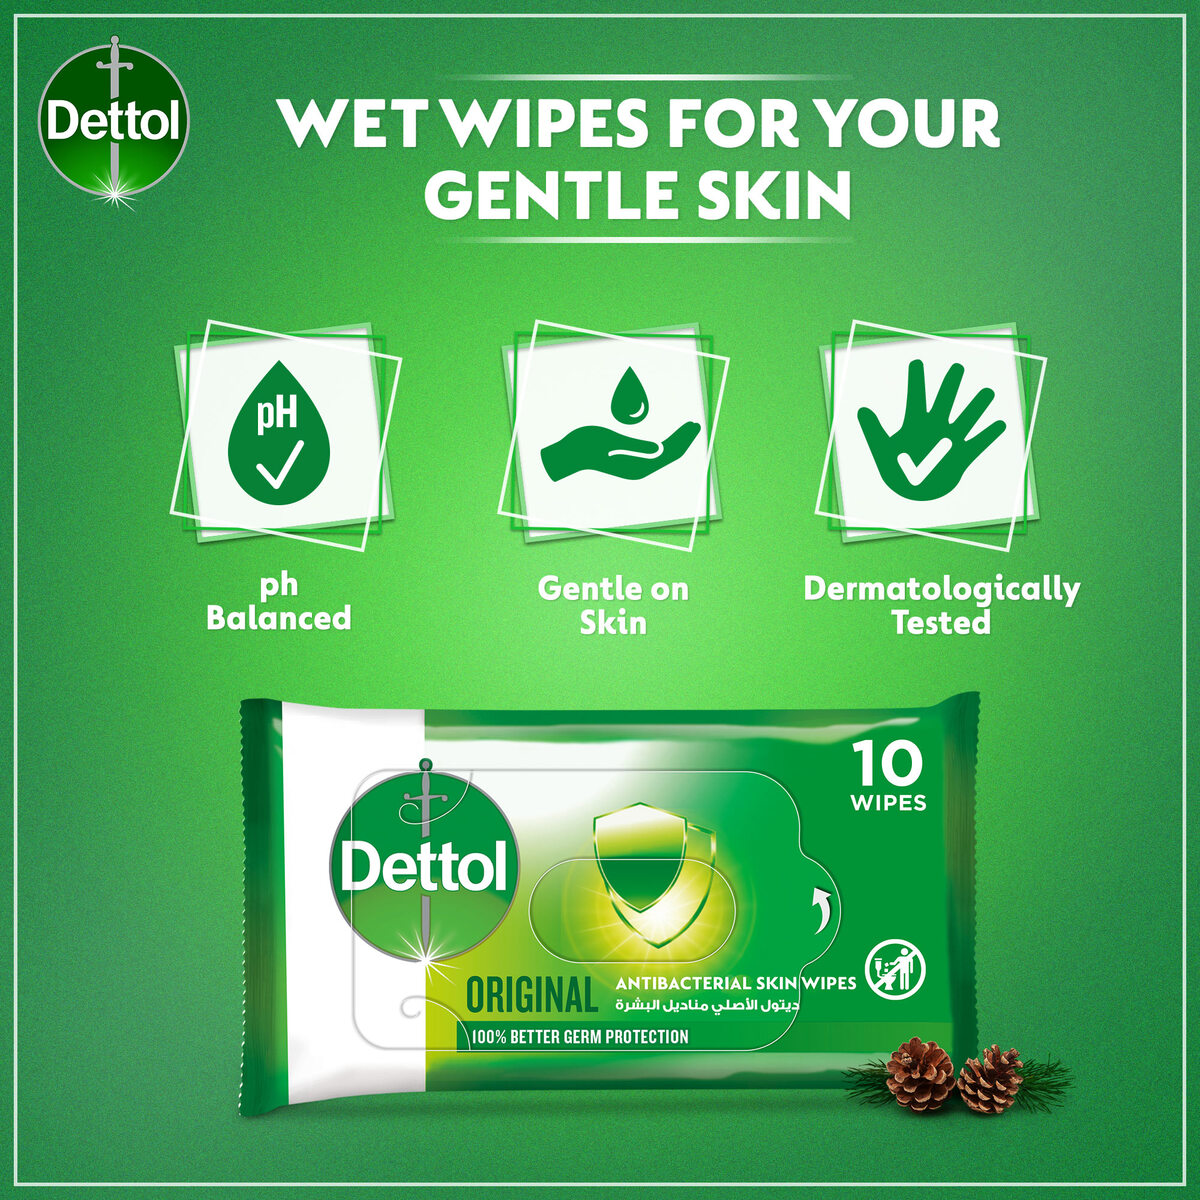 Dettol Original Antibacterial Skin Wipes 10pcs